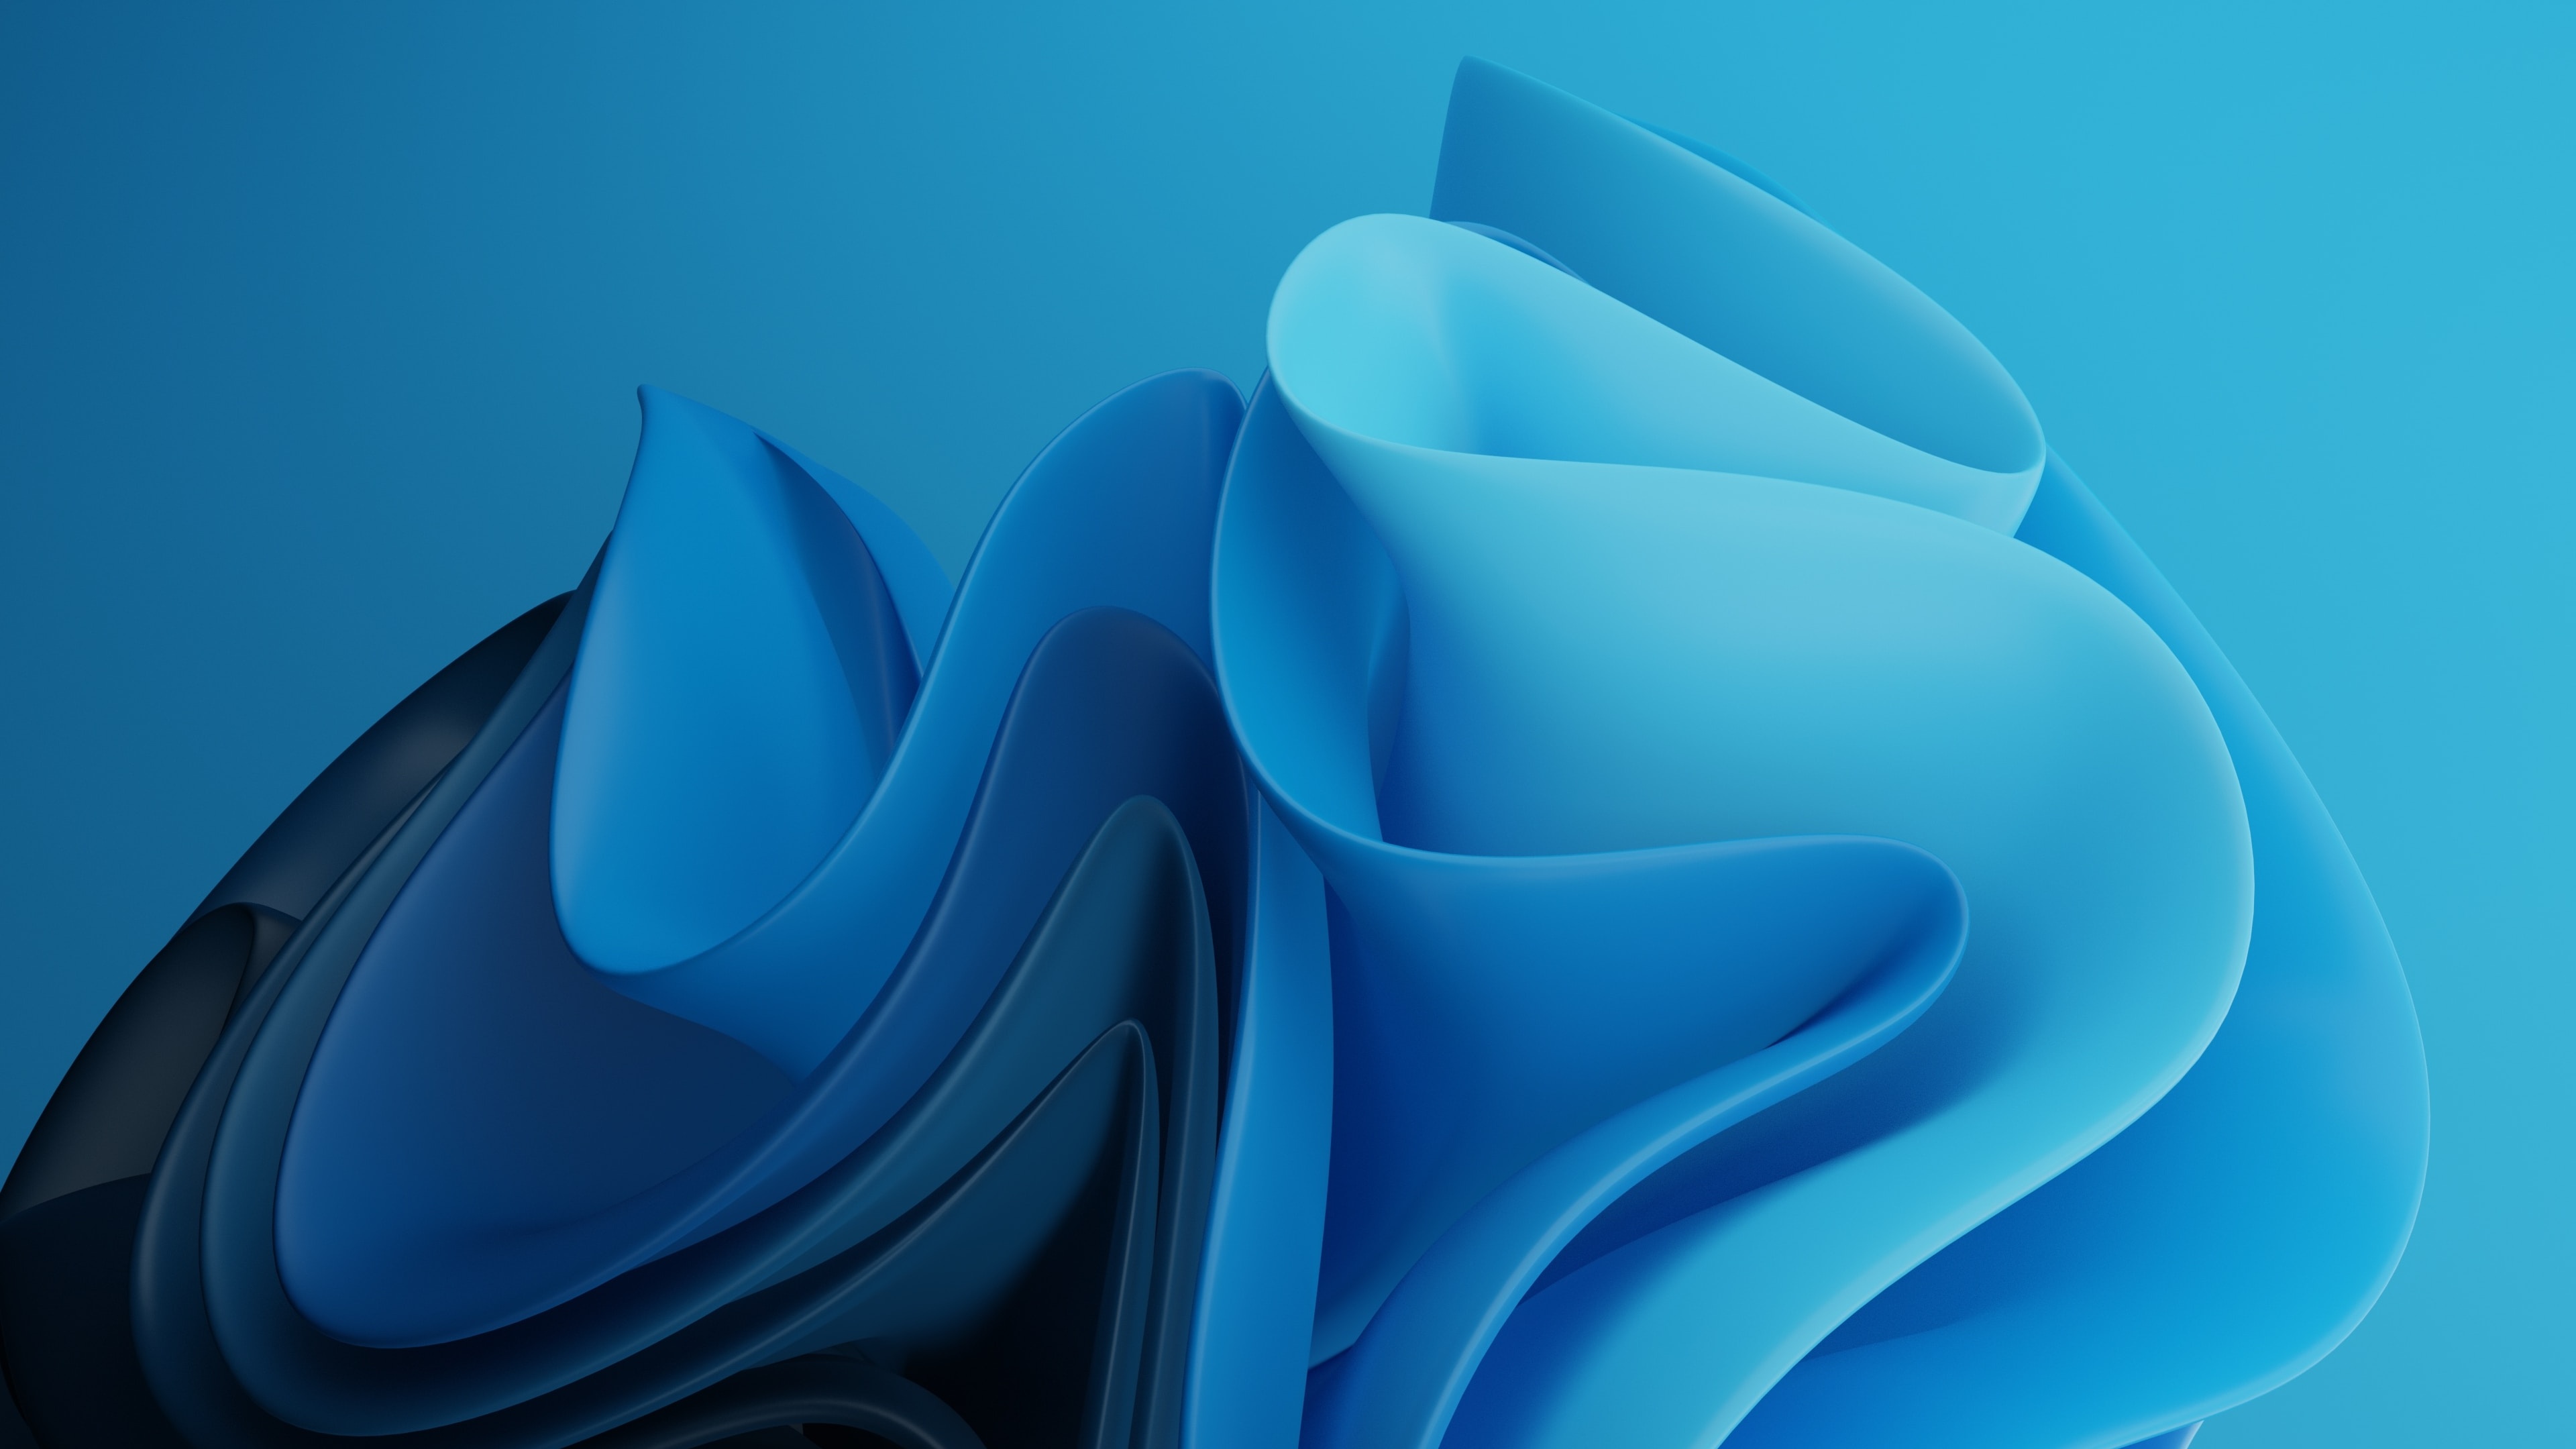 Blue Aesthetic Wallpapers HD Free download  PixelsTalkNet